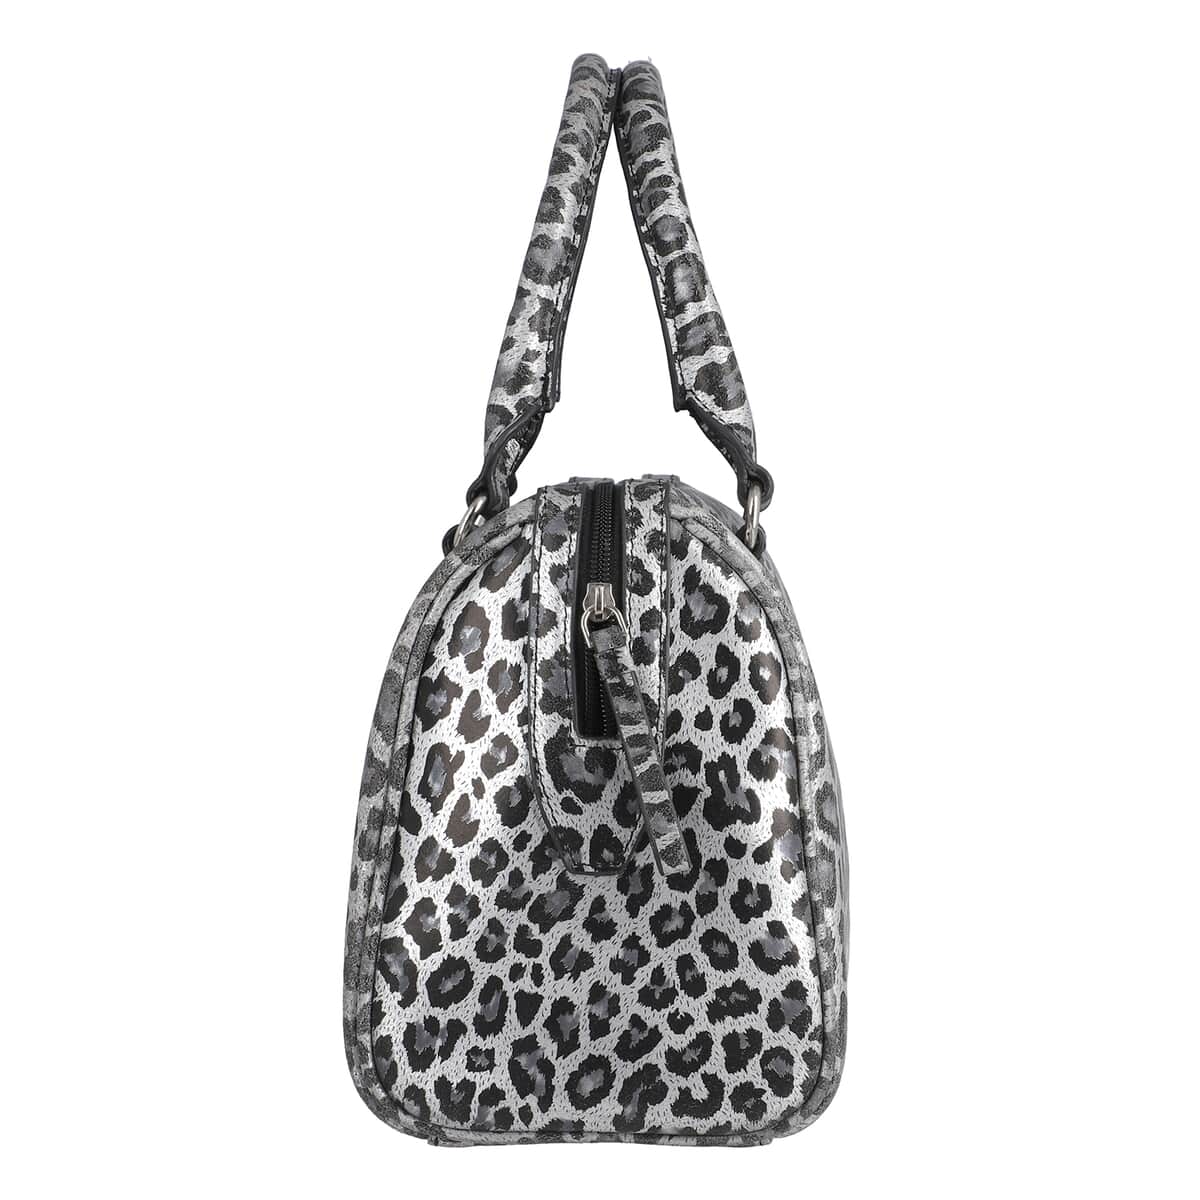 "Leopardskin Foiled Shoulder Bag SIZE: 11.4(L)x3.94(W)x9(H) Inches COLOR: Grey & Black" image number 4